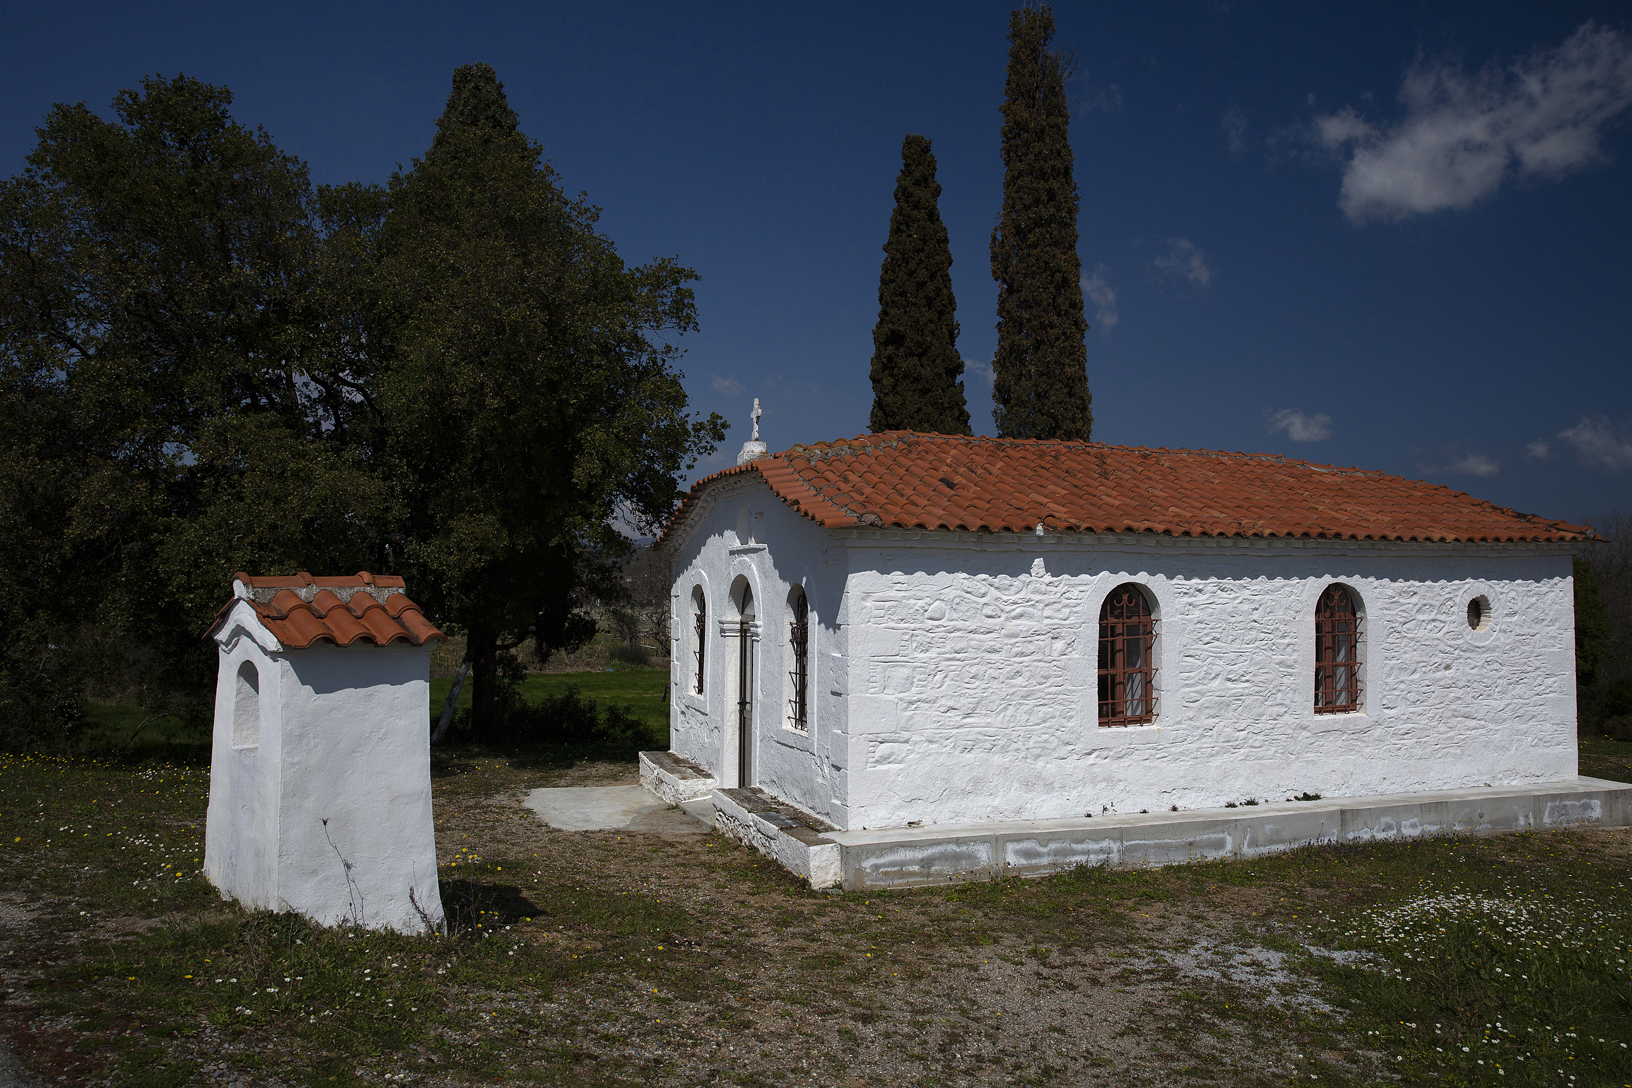 Άγιος Κωνσταντίνος, χωριό Μονόδρυ. Φωτογραφία: ©Βασίλης Συκάς, για τον Δήμο Κύμης-Αλιβερίου